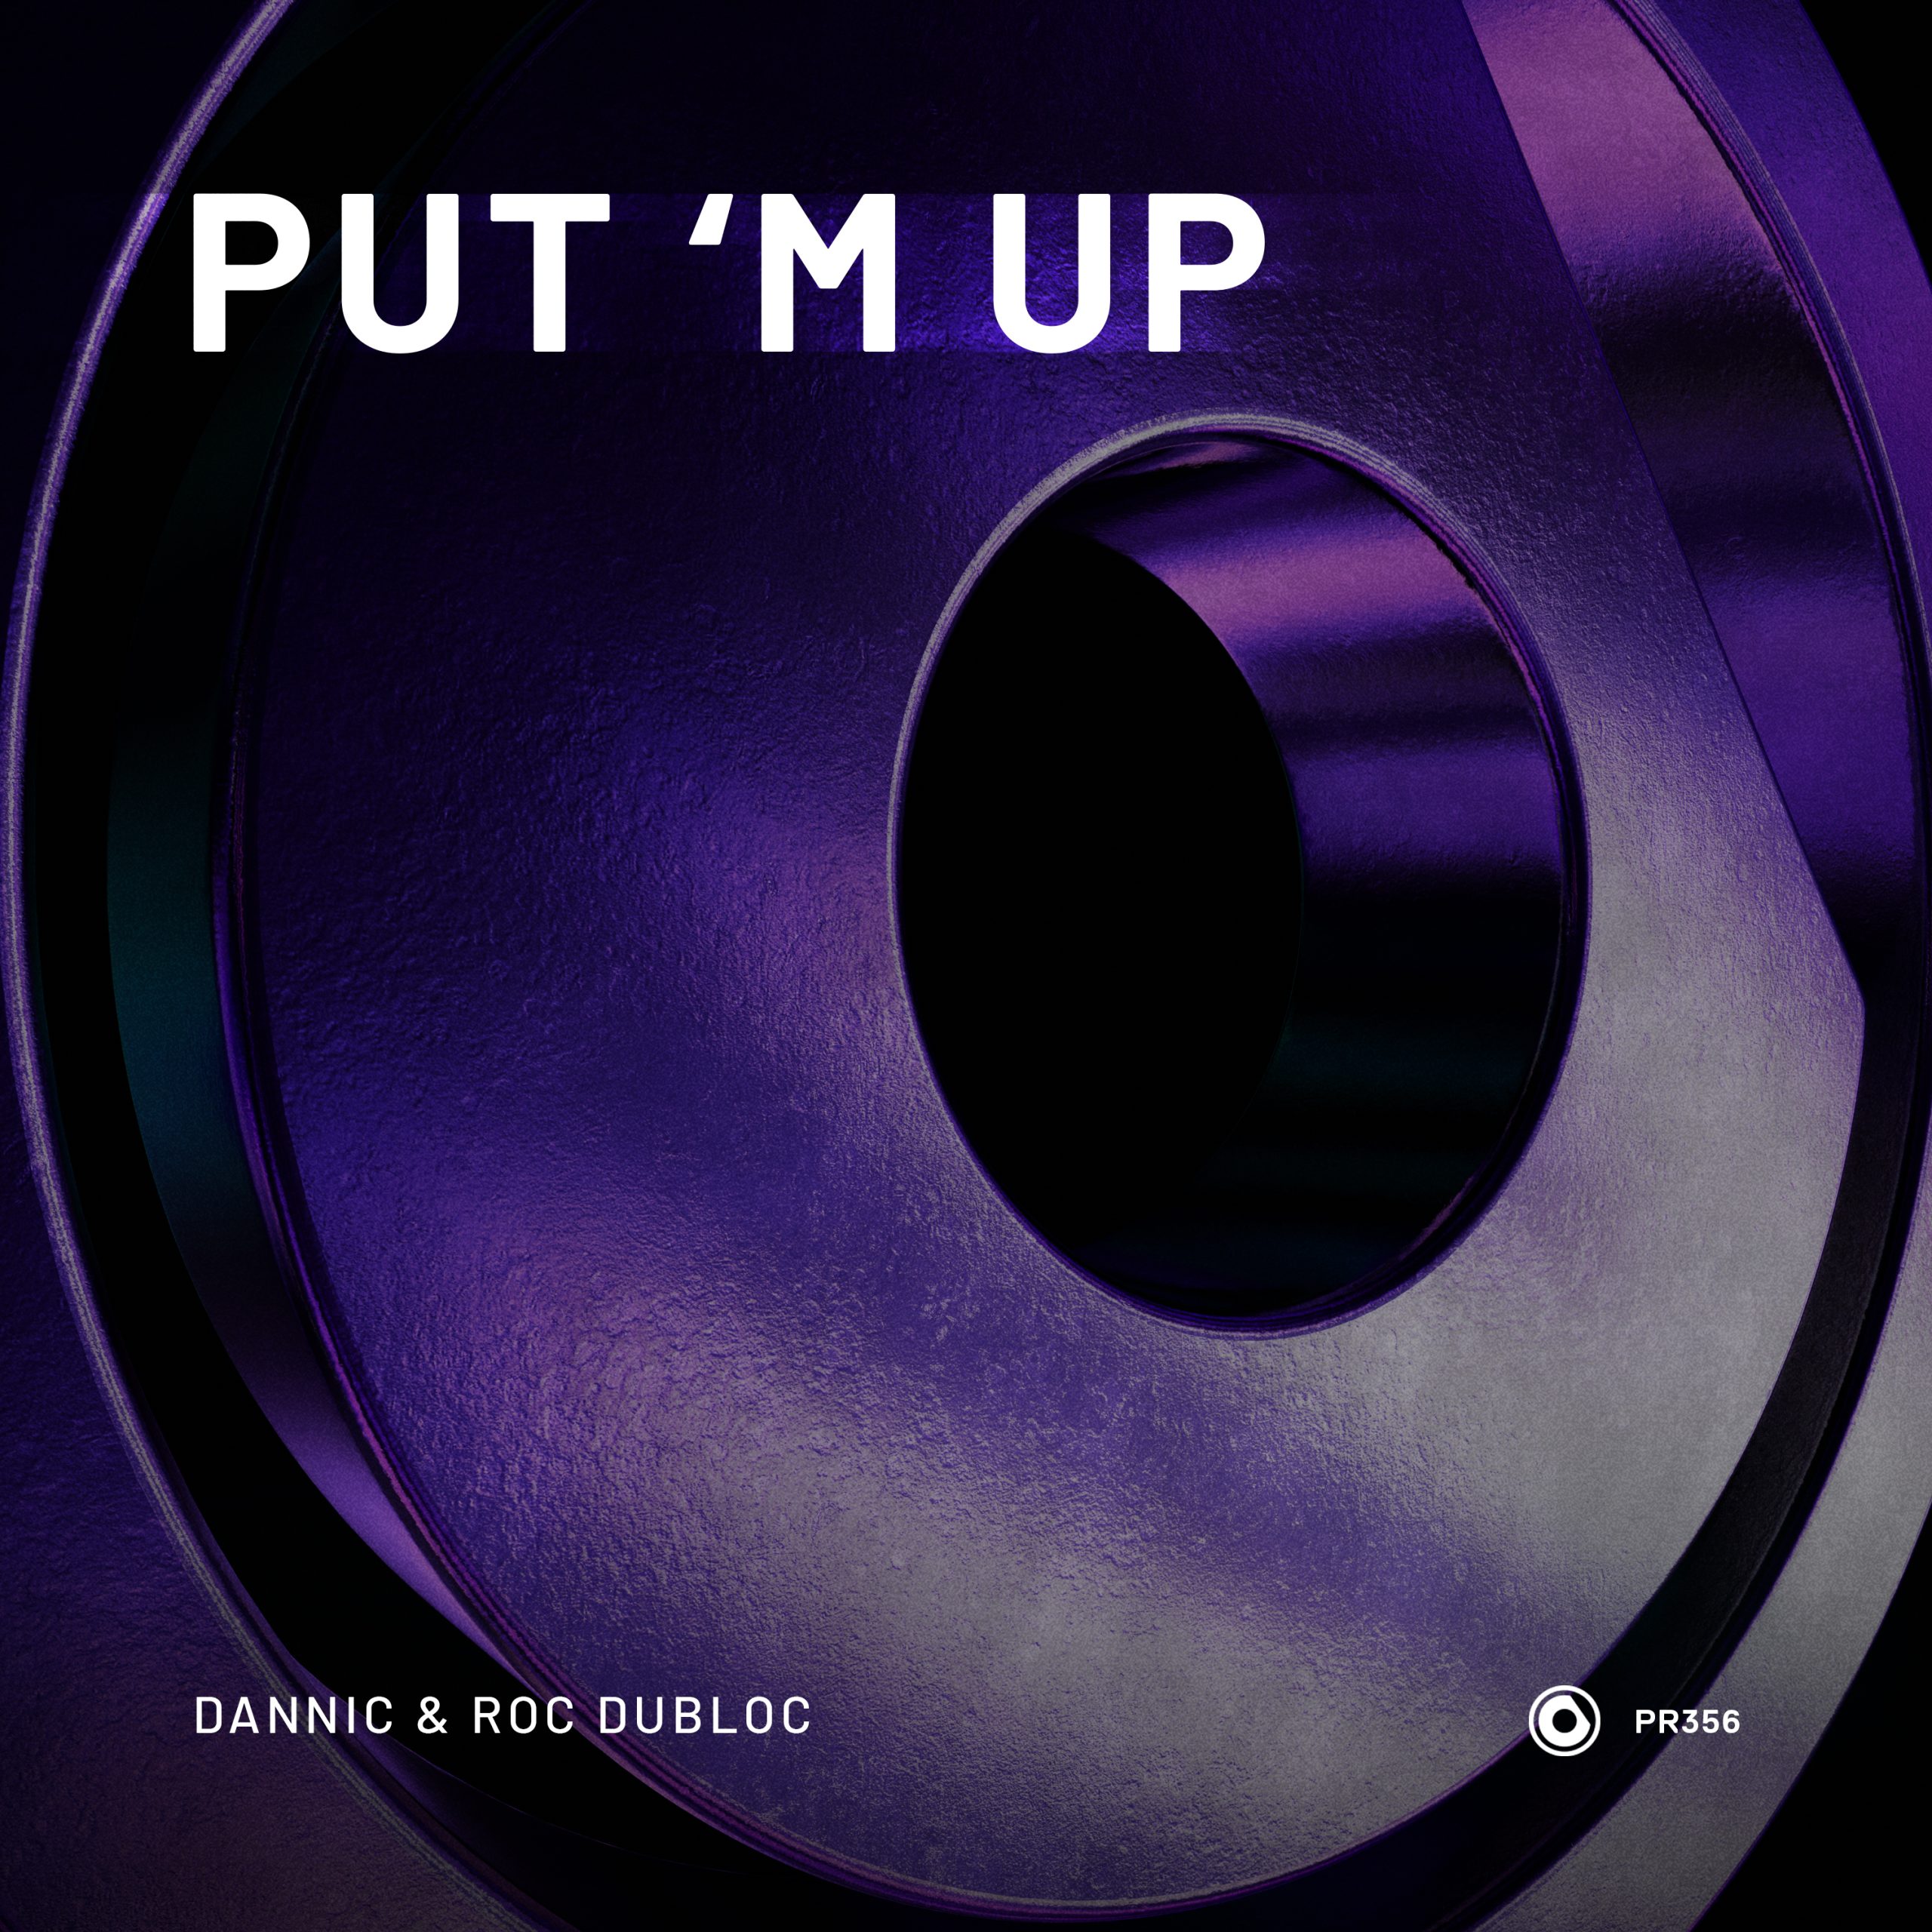 Dannic & Roc Dubloc team up for new single ‘Put ‘M’ Up’: Listen